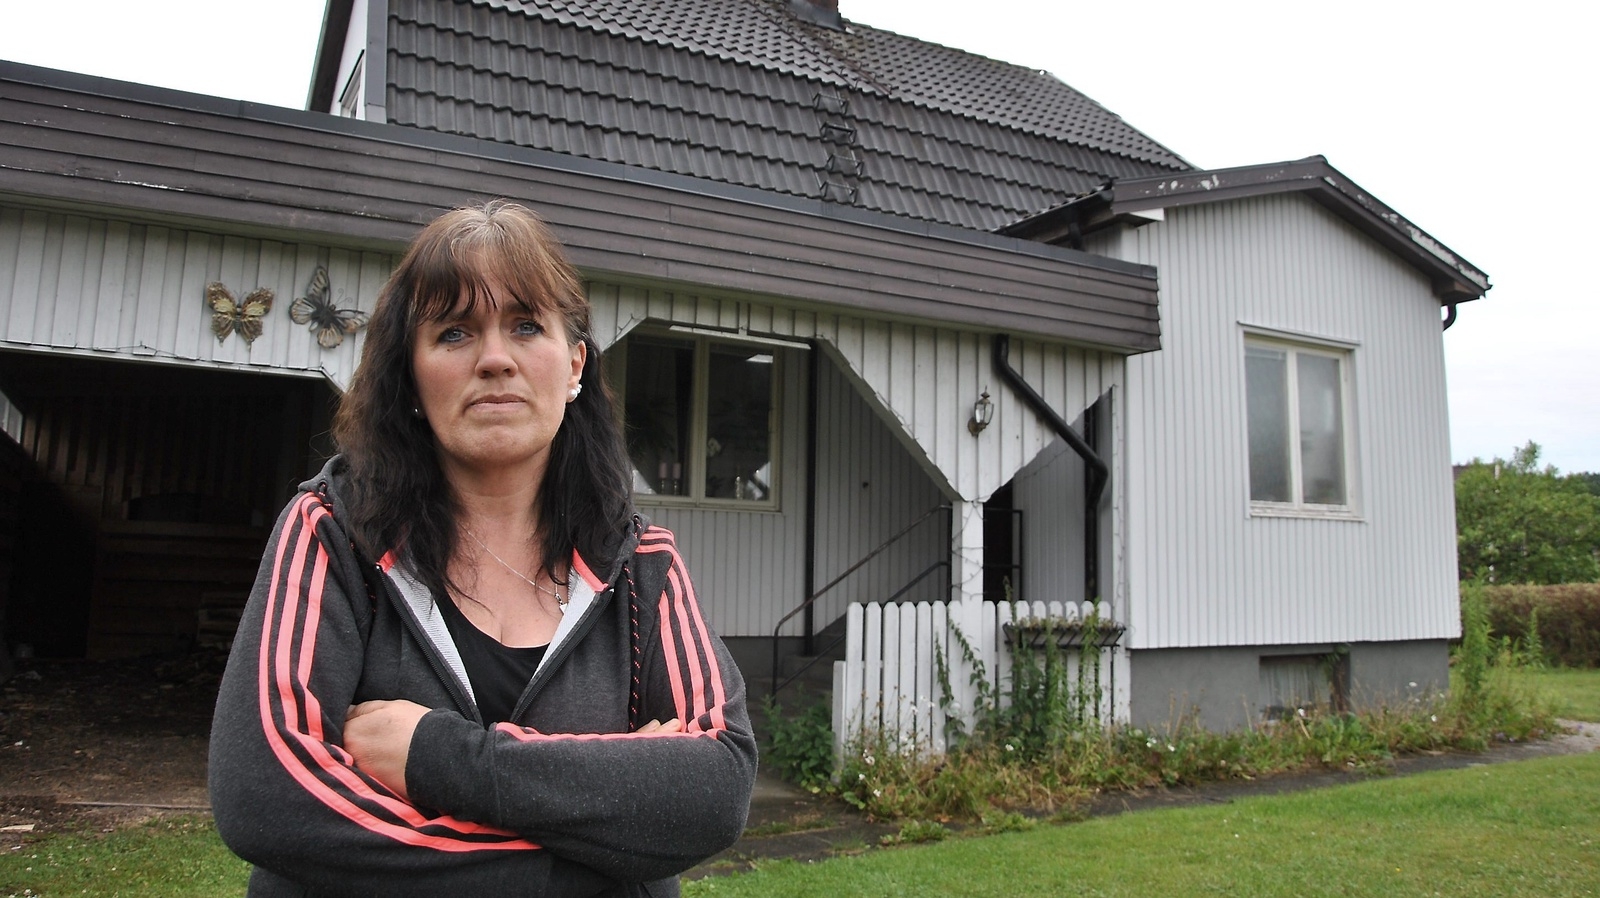 Marita Svensson har bott på adressen sedan 2011.  Foto: Axel Hilleskog